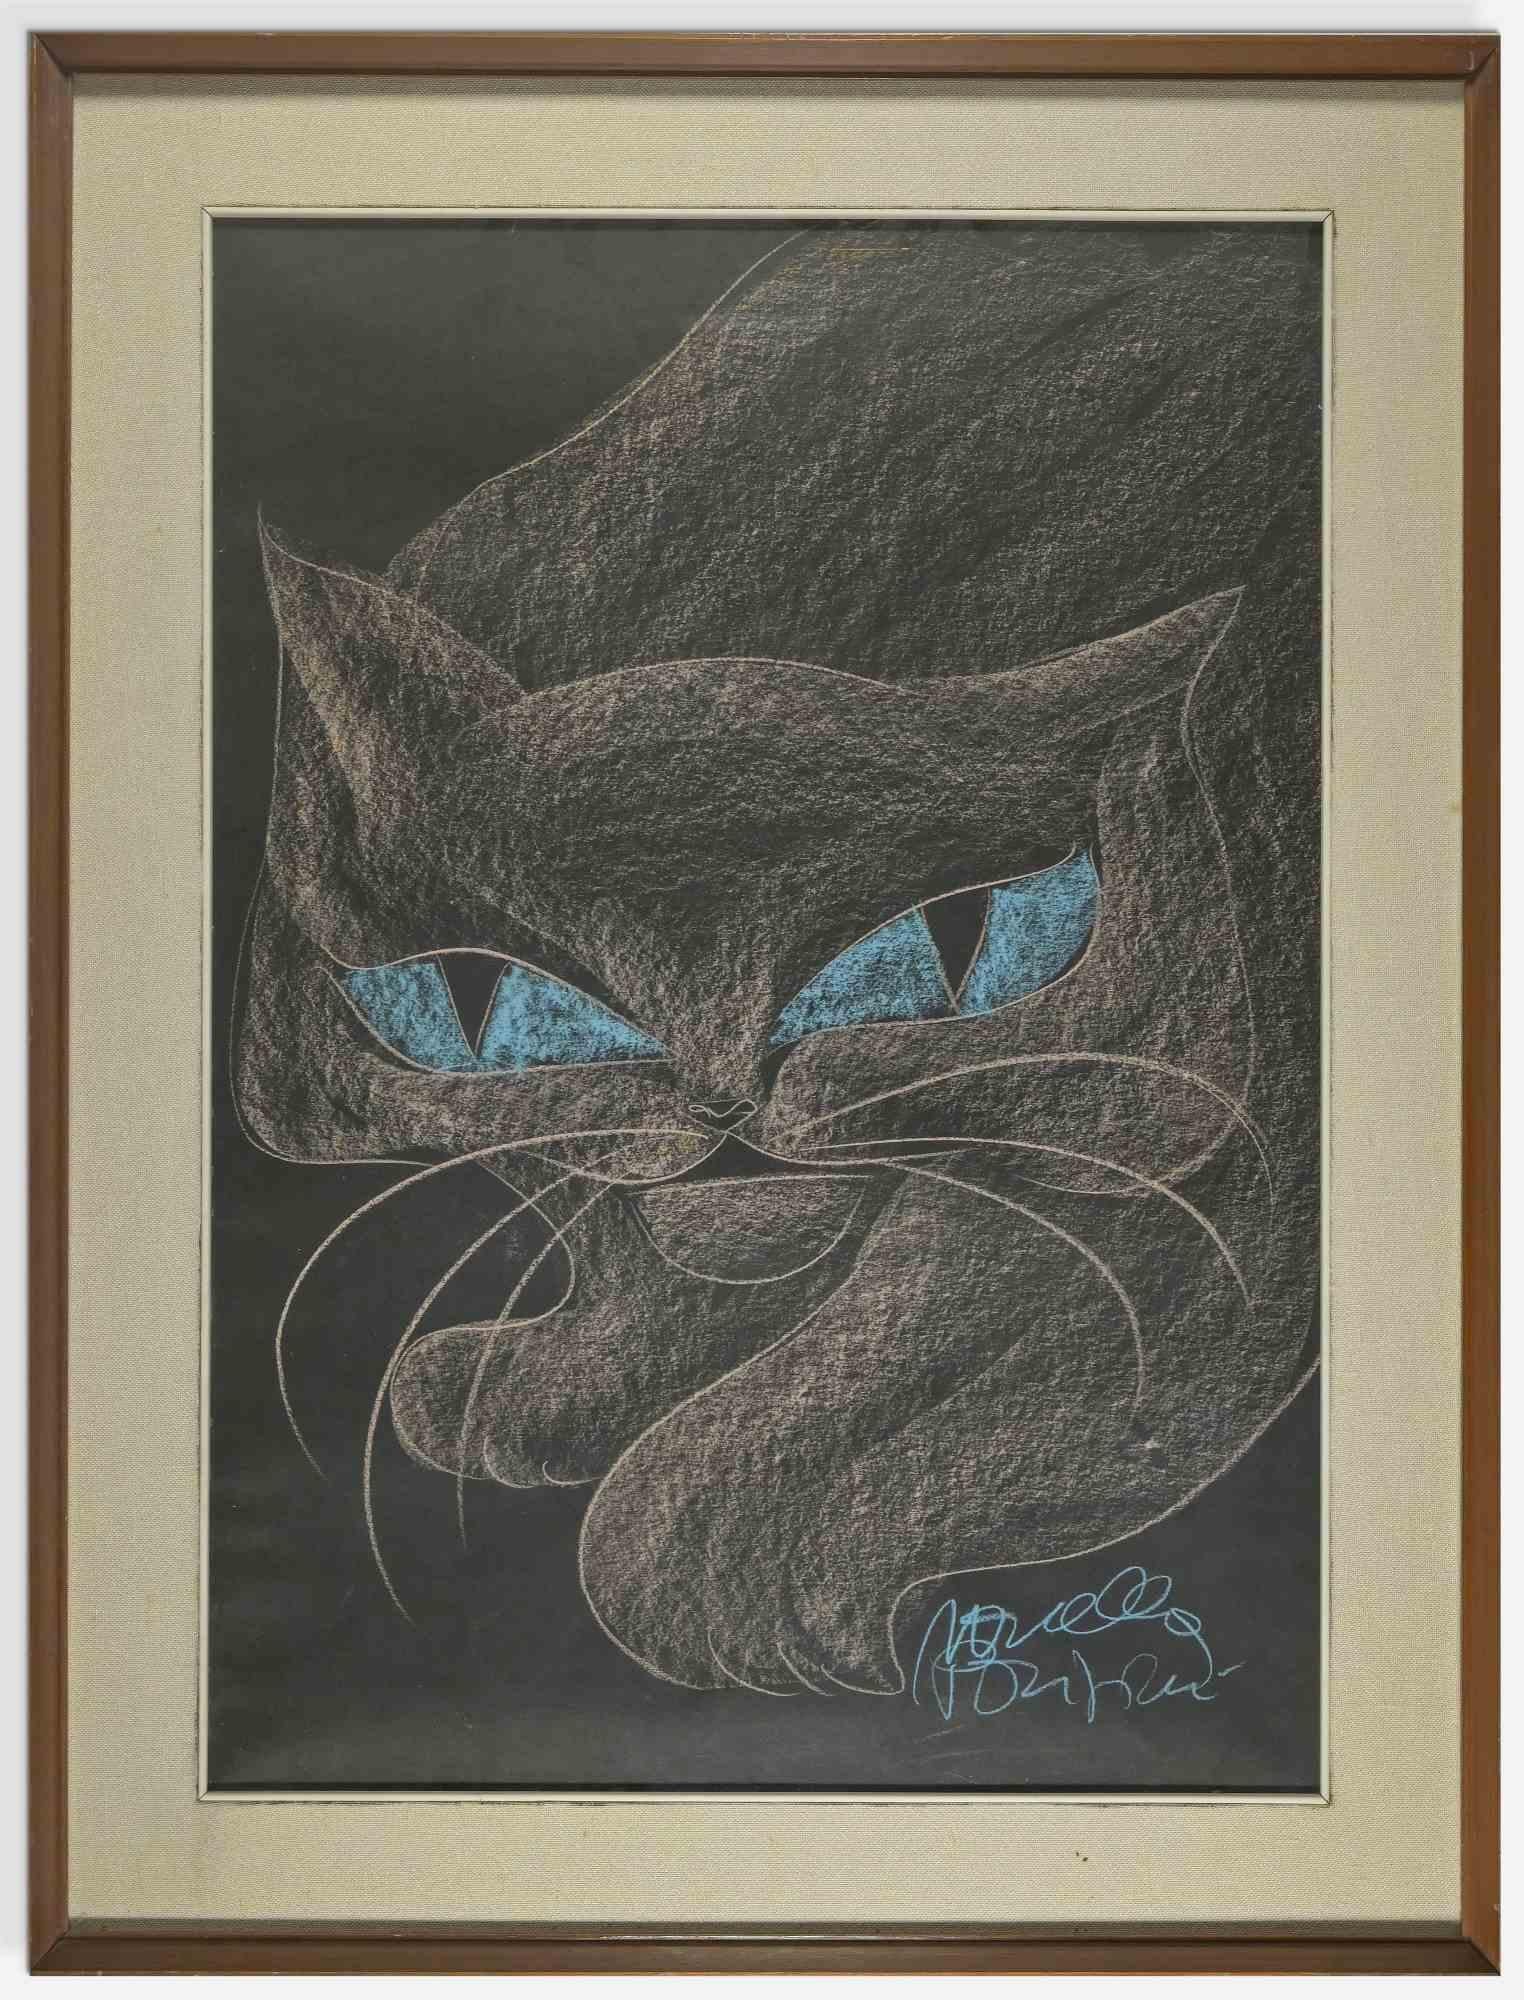 Cat est une œuvre d'art réalisée par Novella Parigini (Chiusi 1921 - Rome 1993)

Craie polychrome sur papier noir.

83x63 cm cadre inclus.

Signé à la main en bas à droite.

Bonnes conditions. 